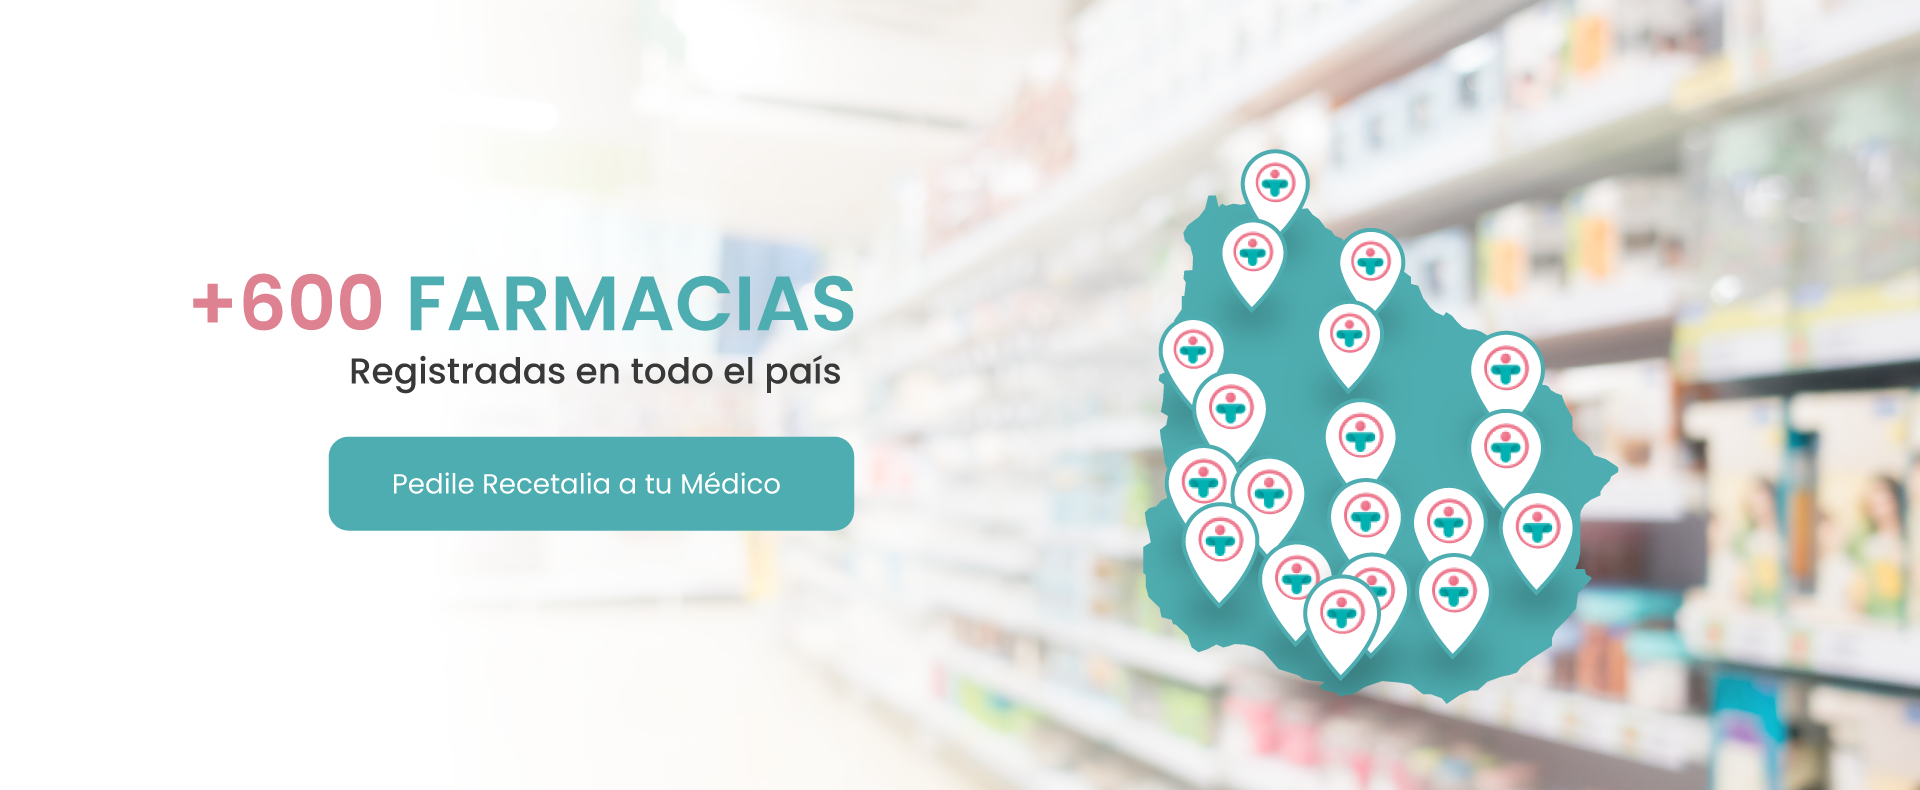 +500 farmacias en todo el pais - Recetalia